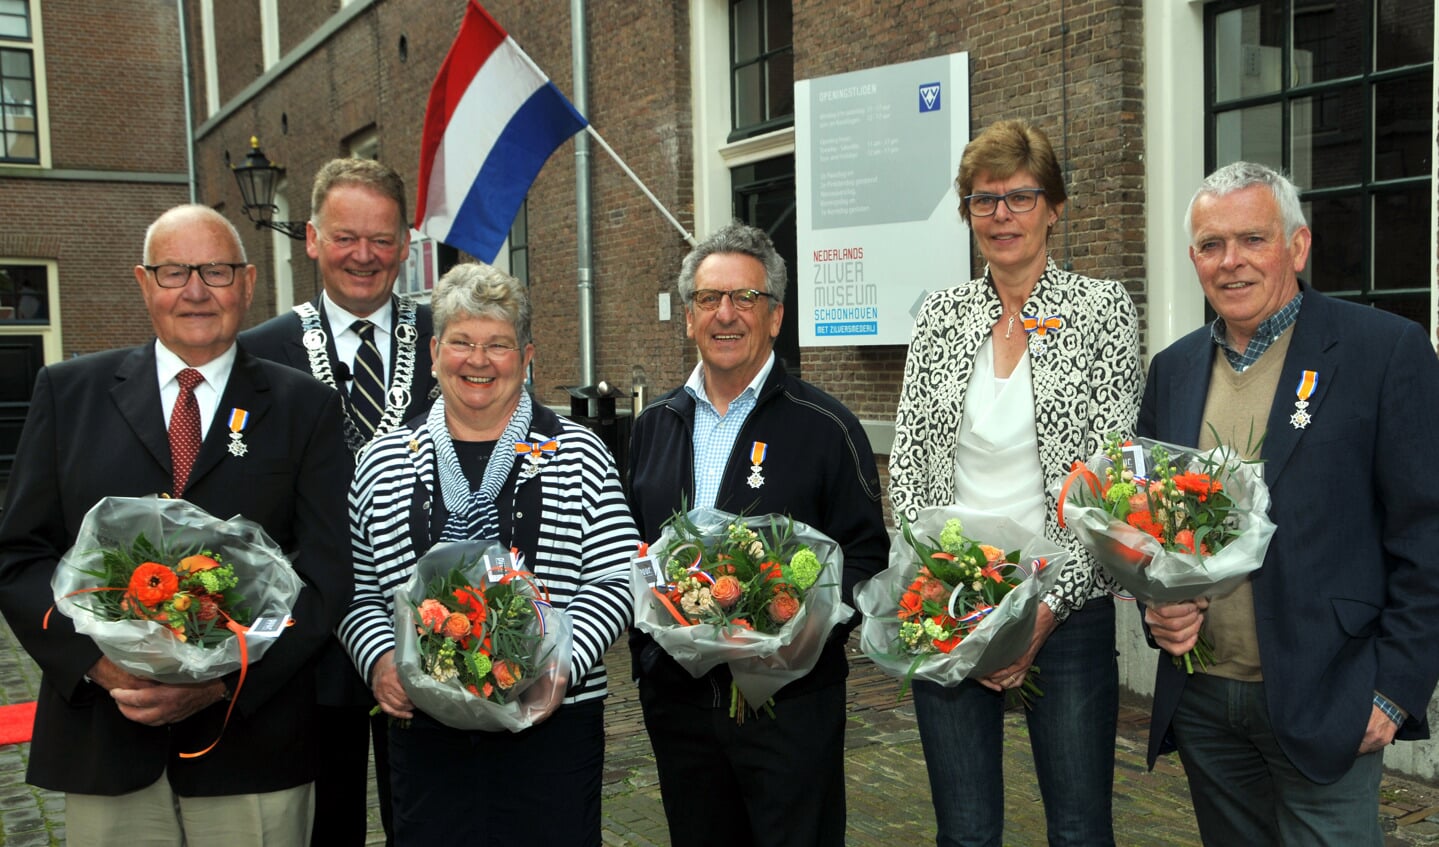 • V.l.n.r.:  Cock van Holten, burgemeester Cazemier, Maartje en Gerrit de Kovel, Marijke Schouten en Hans Straver. (foto: Adri Verhoeven)